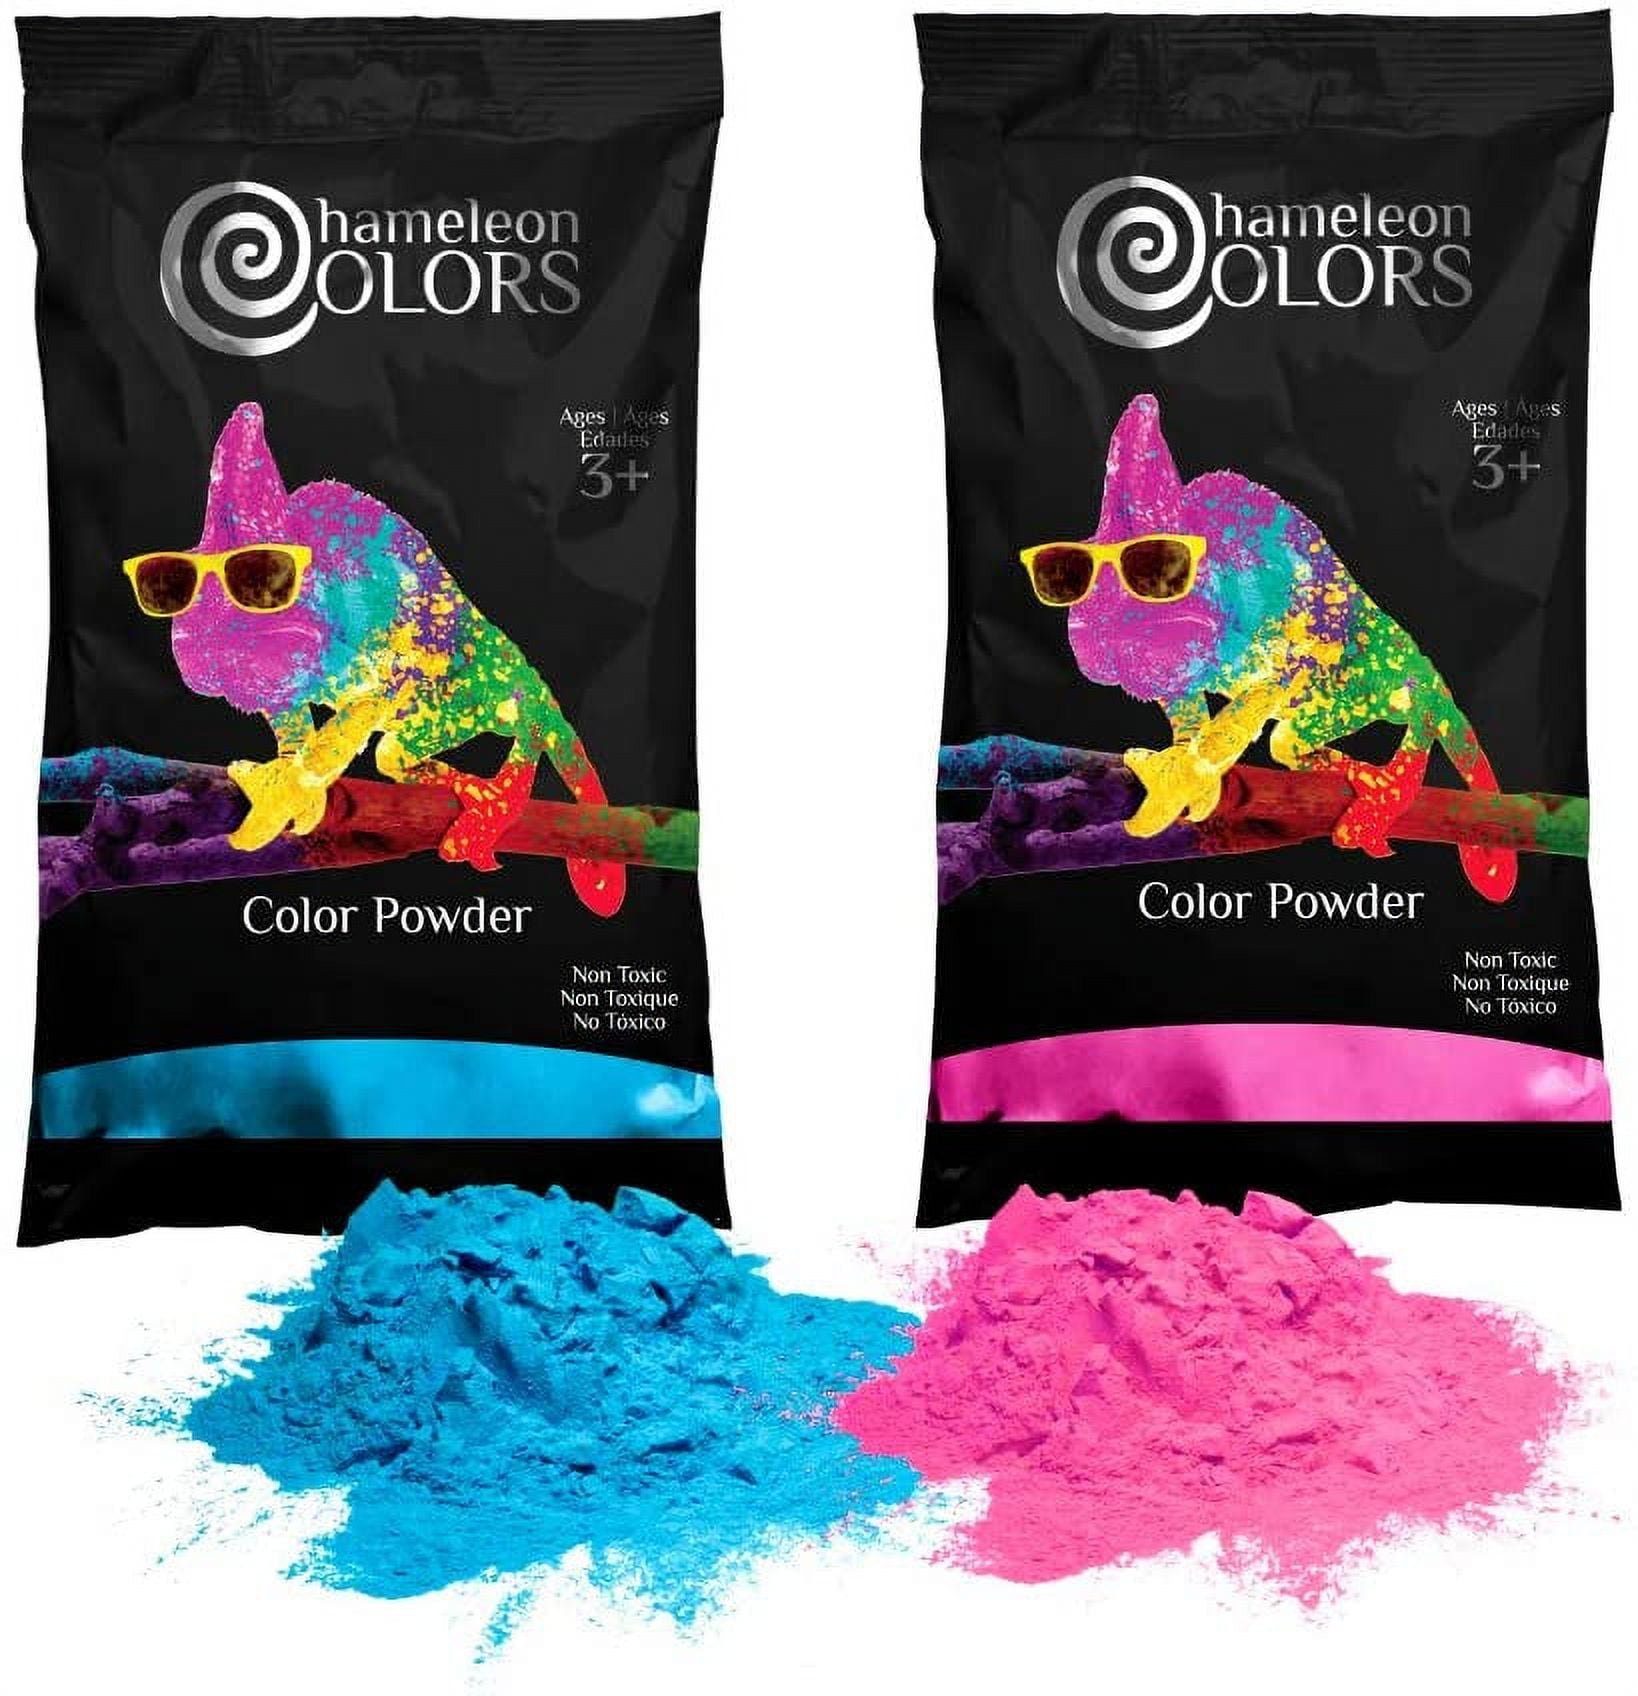 Chameleon Colors Holi Color Powder 1lb Pink and 1lb True Blue Gender Reveal